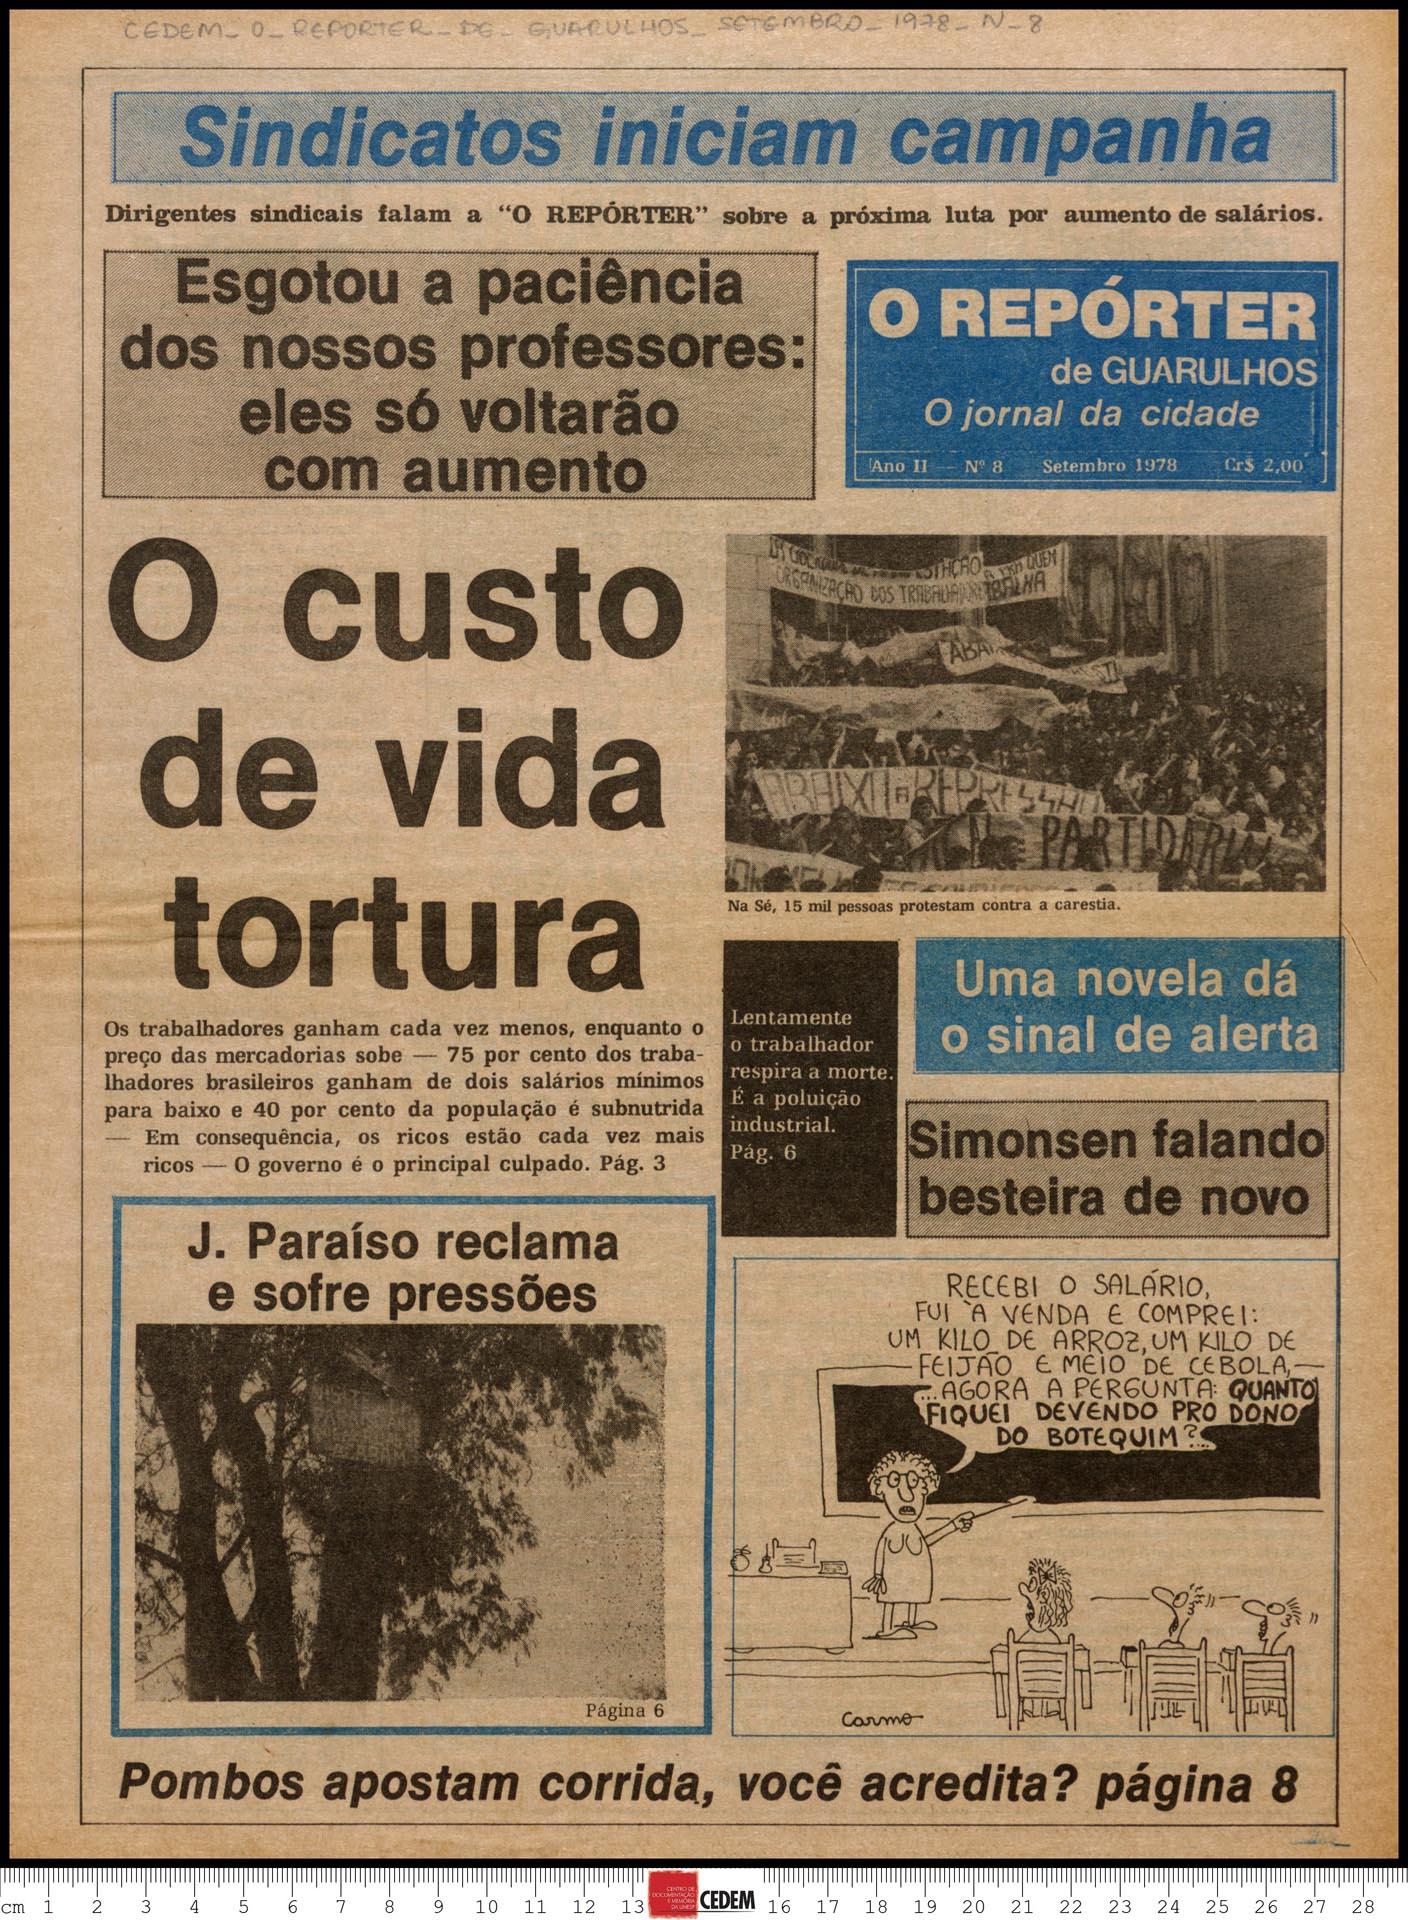 O reportér de Guarulhos - 8 - set. 1978